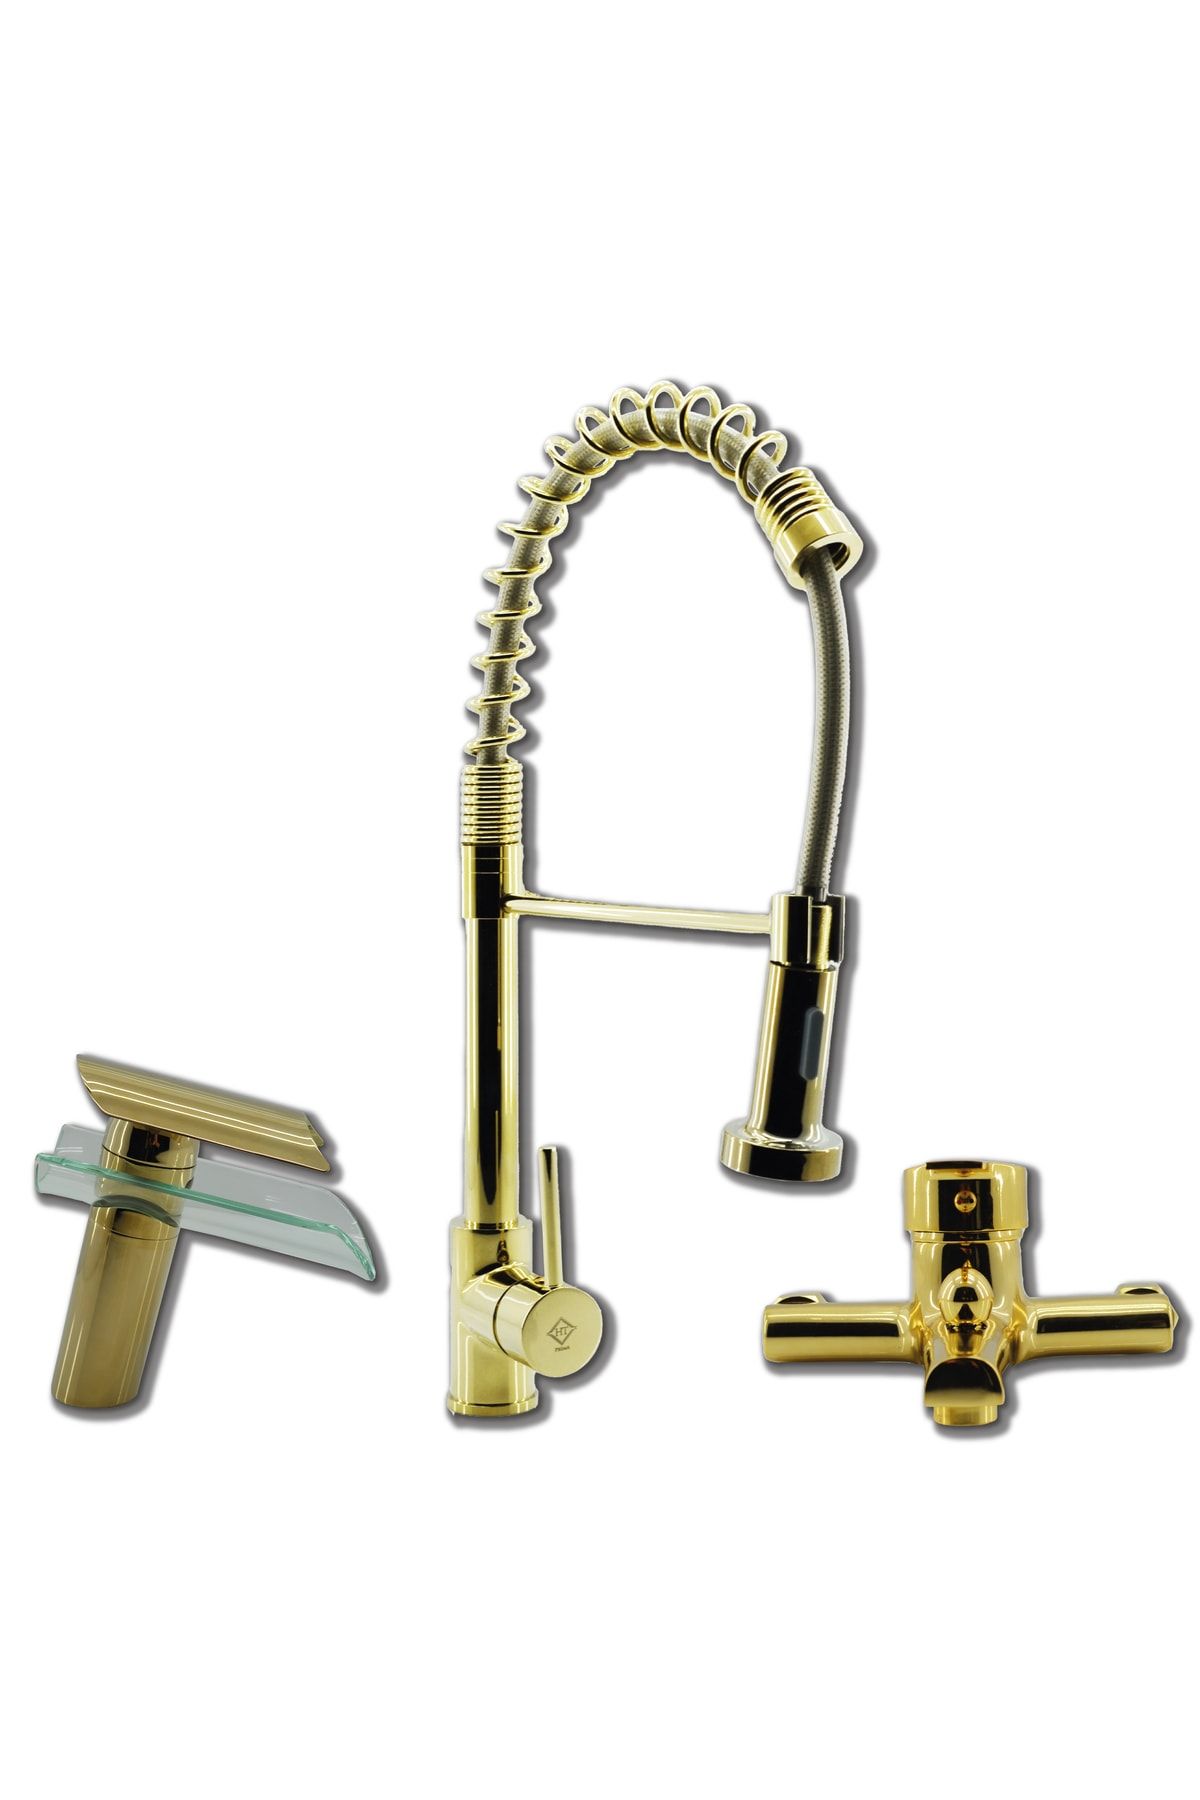 Prima Pirima Endüstriyel Evye Batarya Gold (altın) Renk 3'lü Set Evye-lavabo-banyo Bataryası